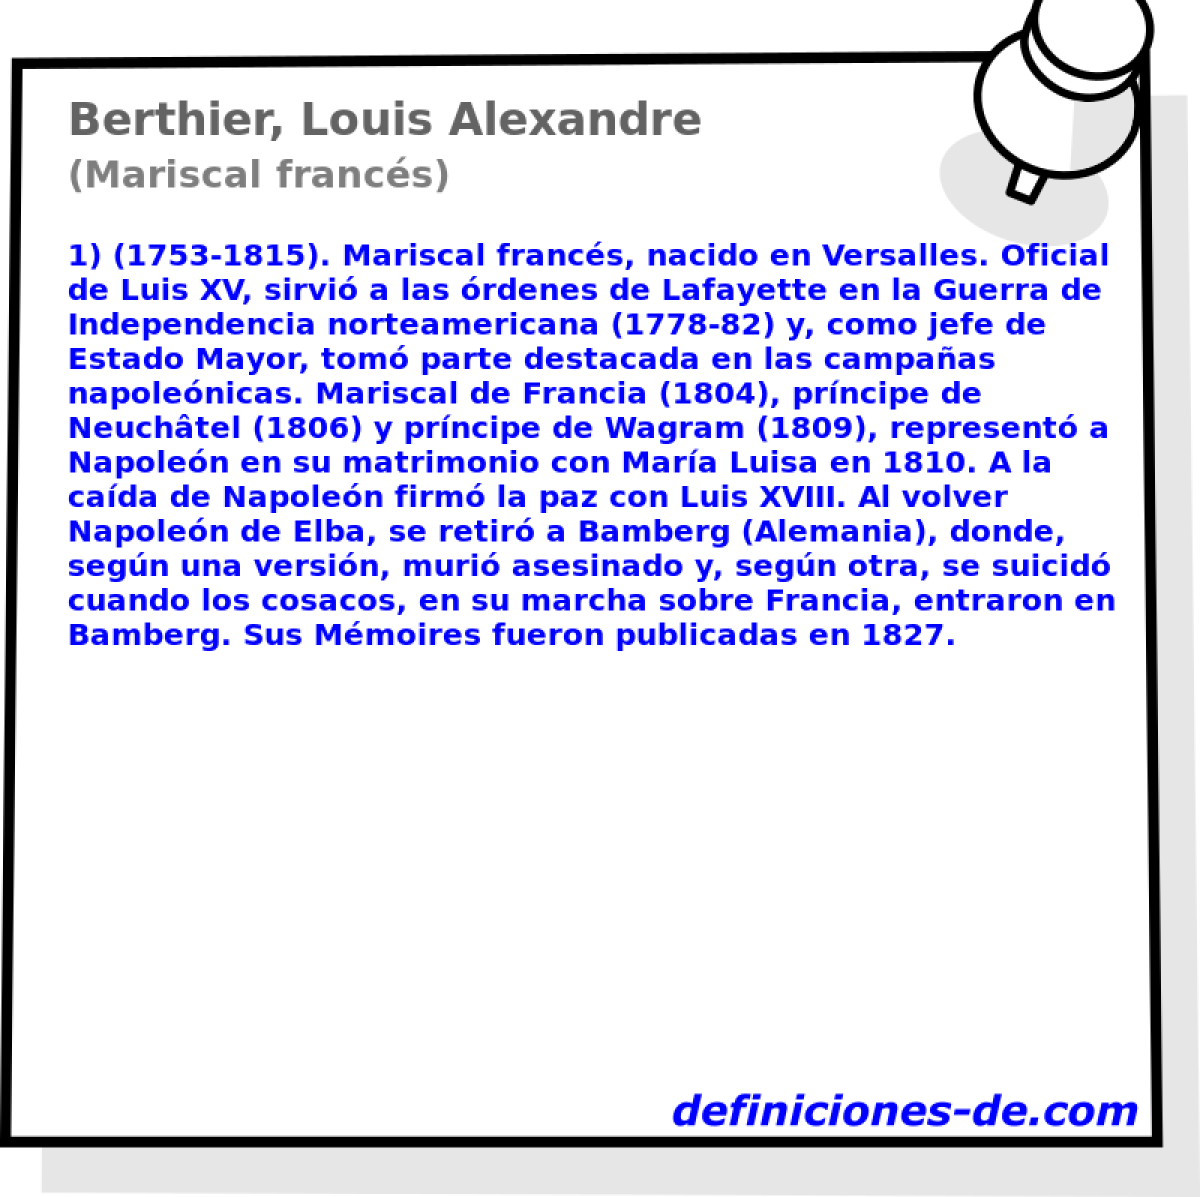 Berthier, Louis Alexandre (Mariscal francs)